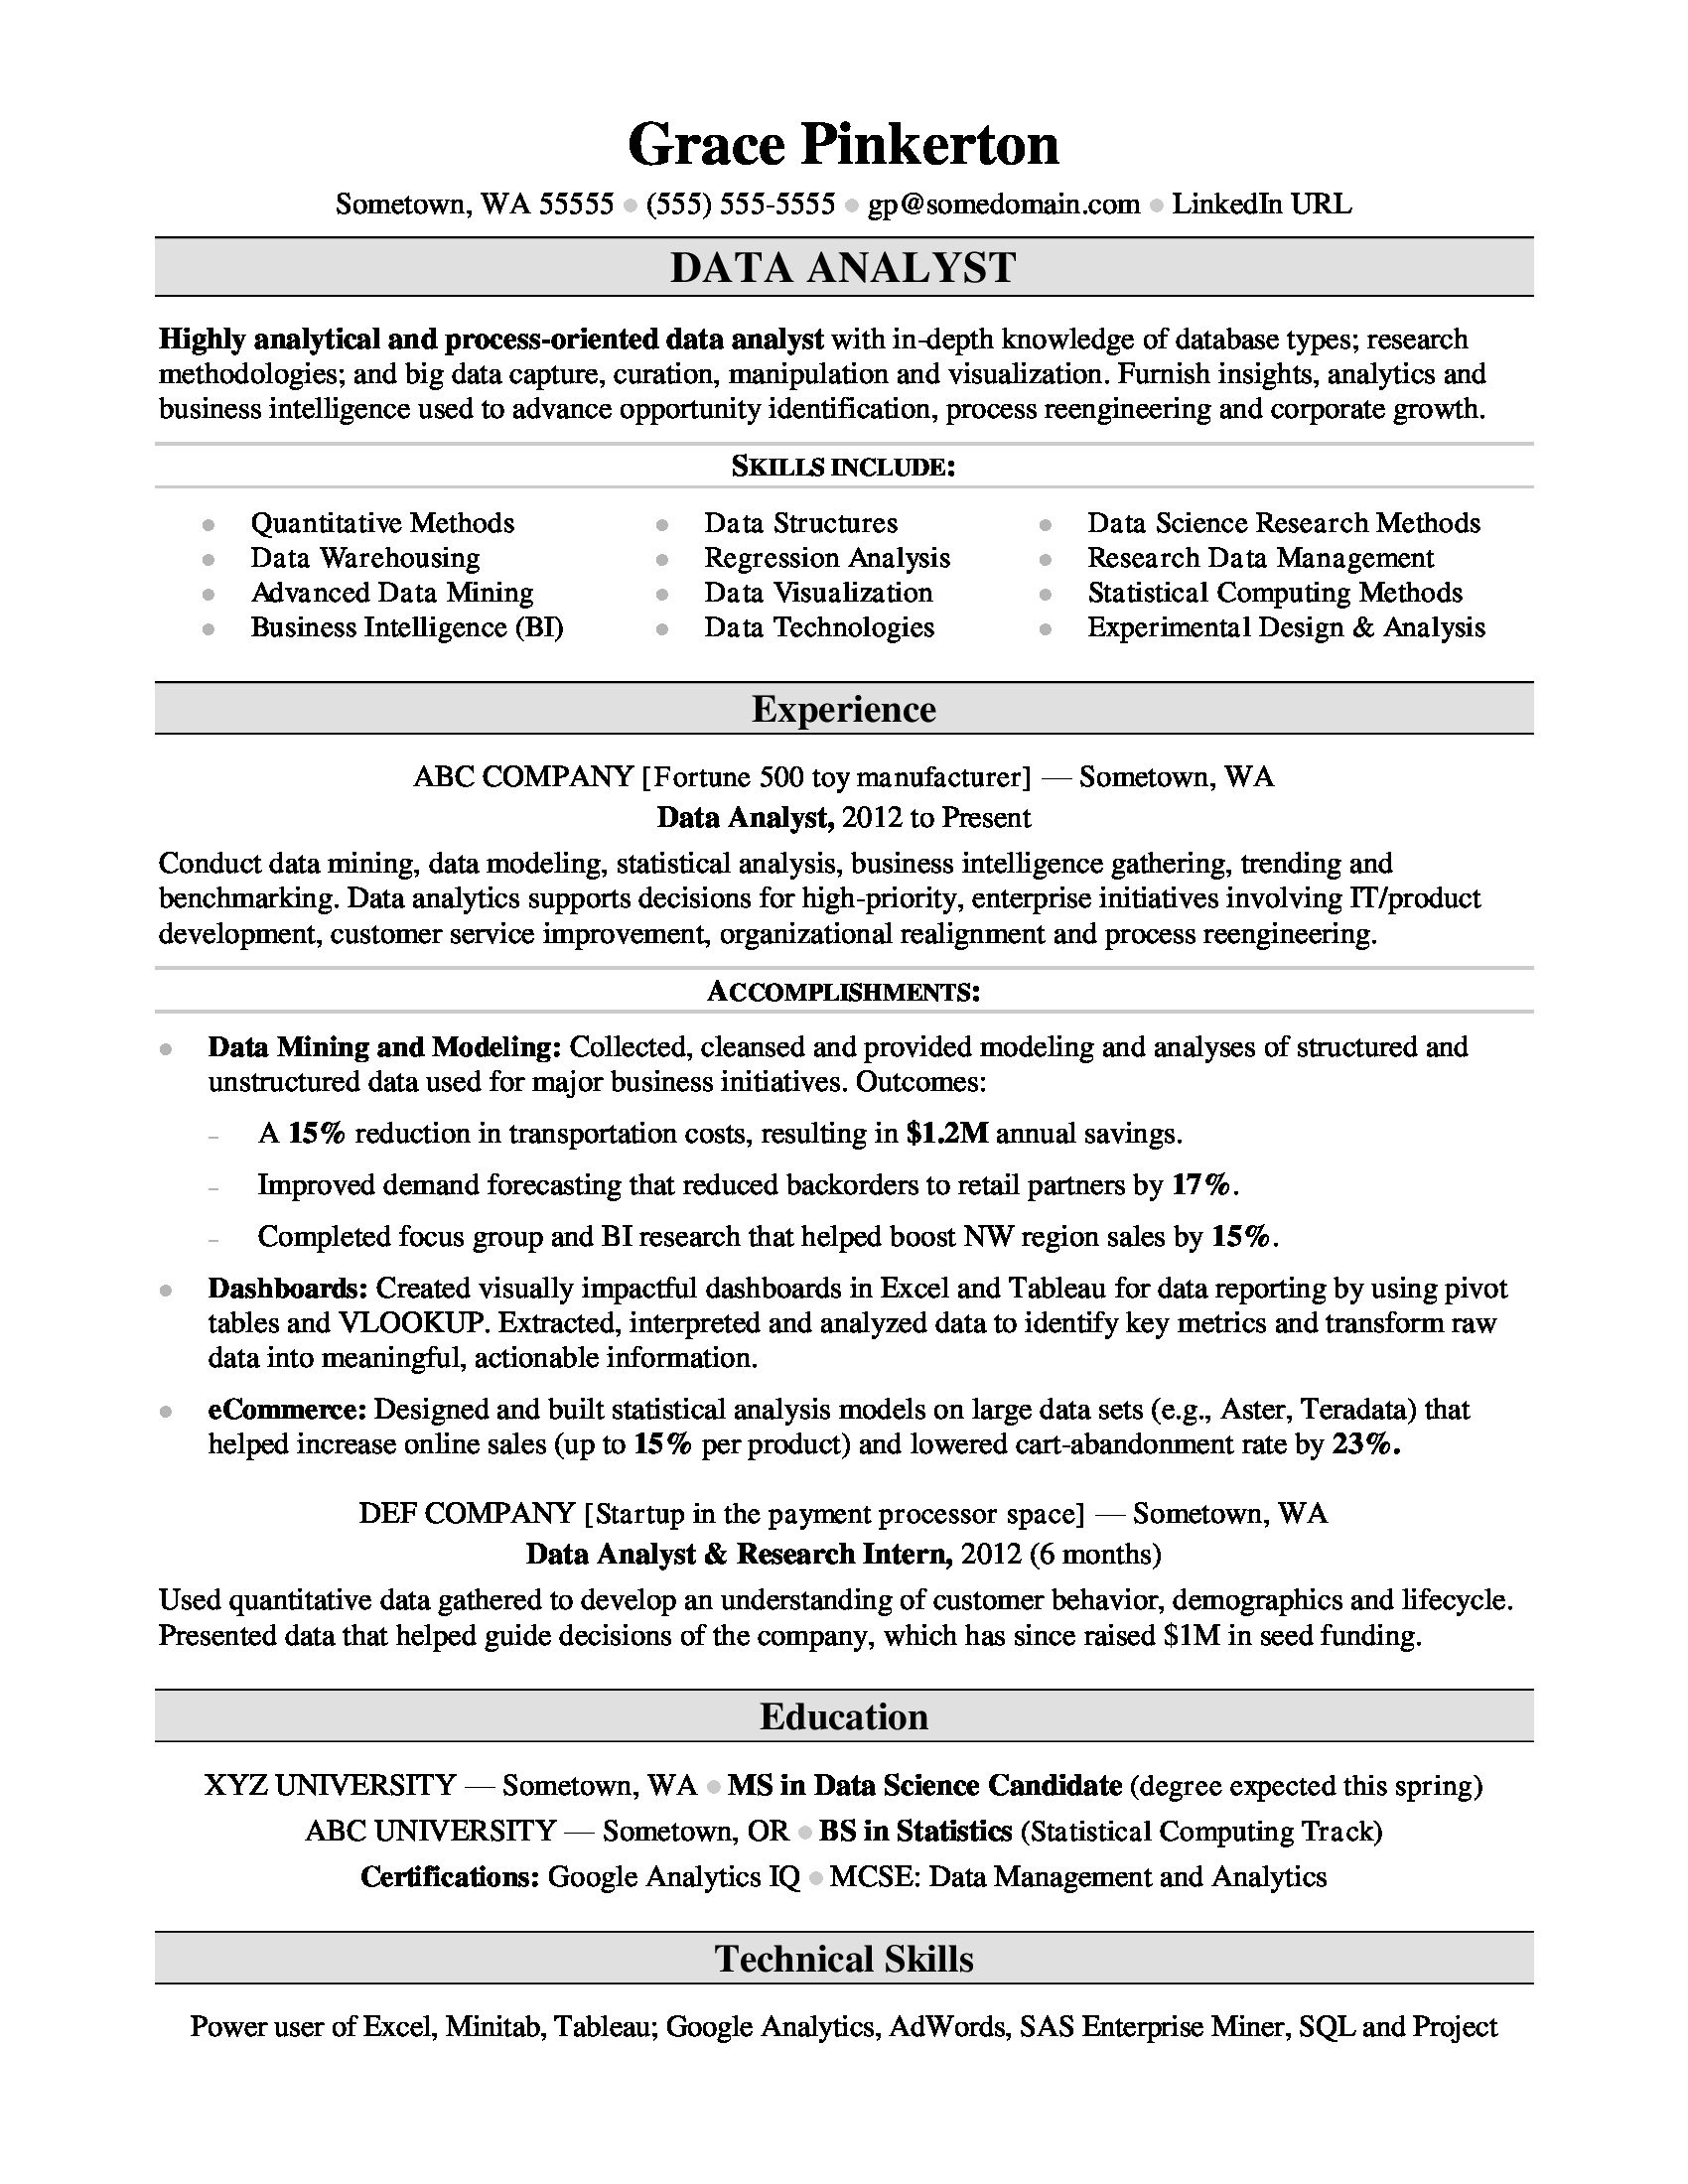 Sample Resume for Statistical Data Analyst Data Analyst Resume Sample Monster.com